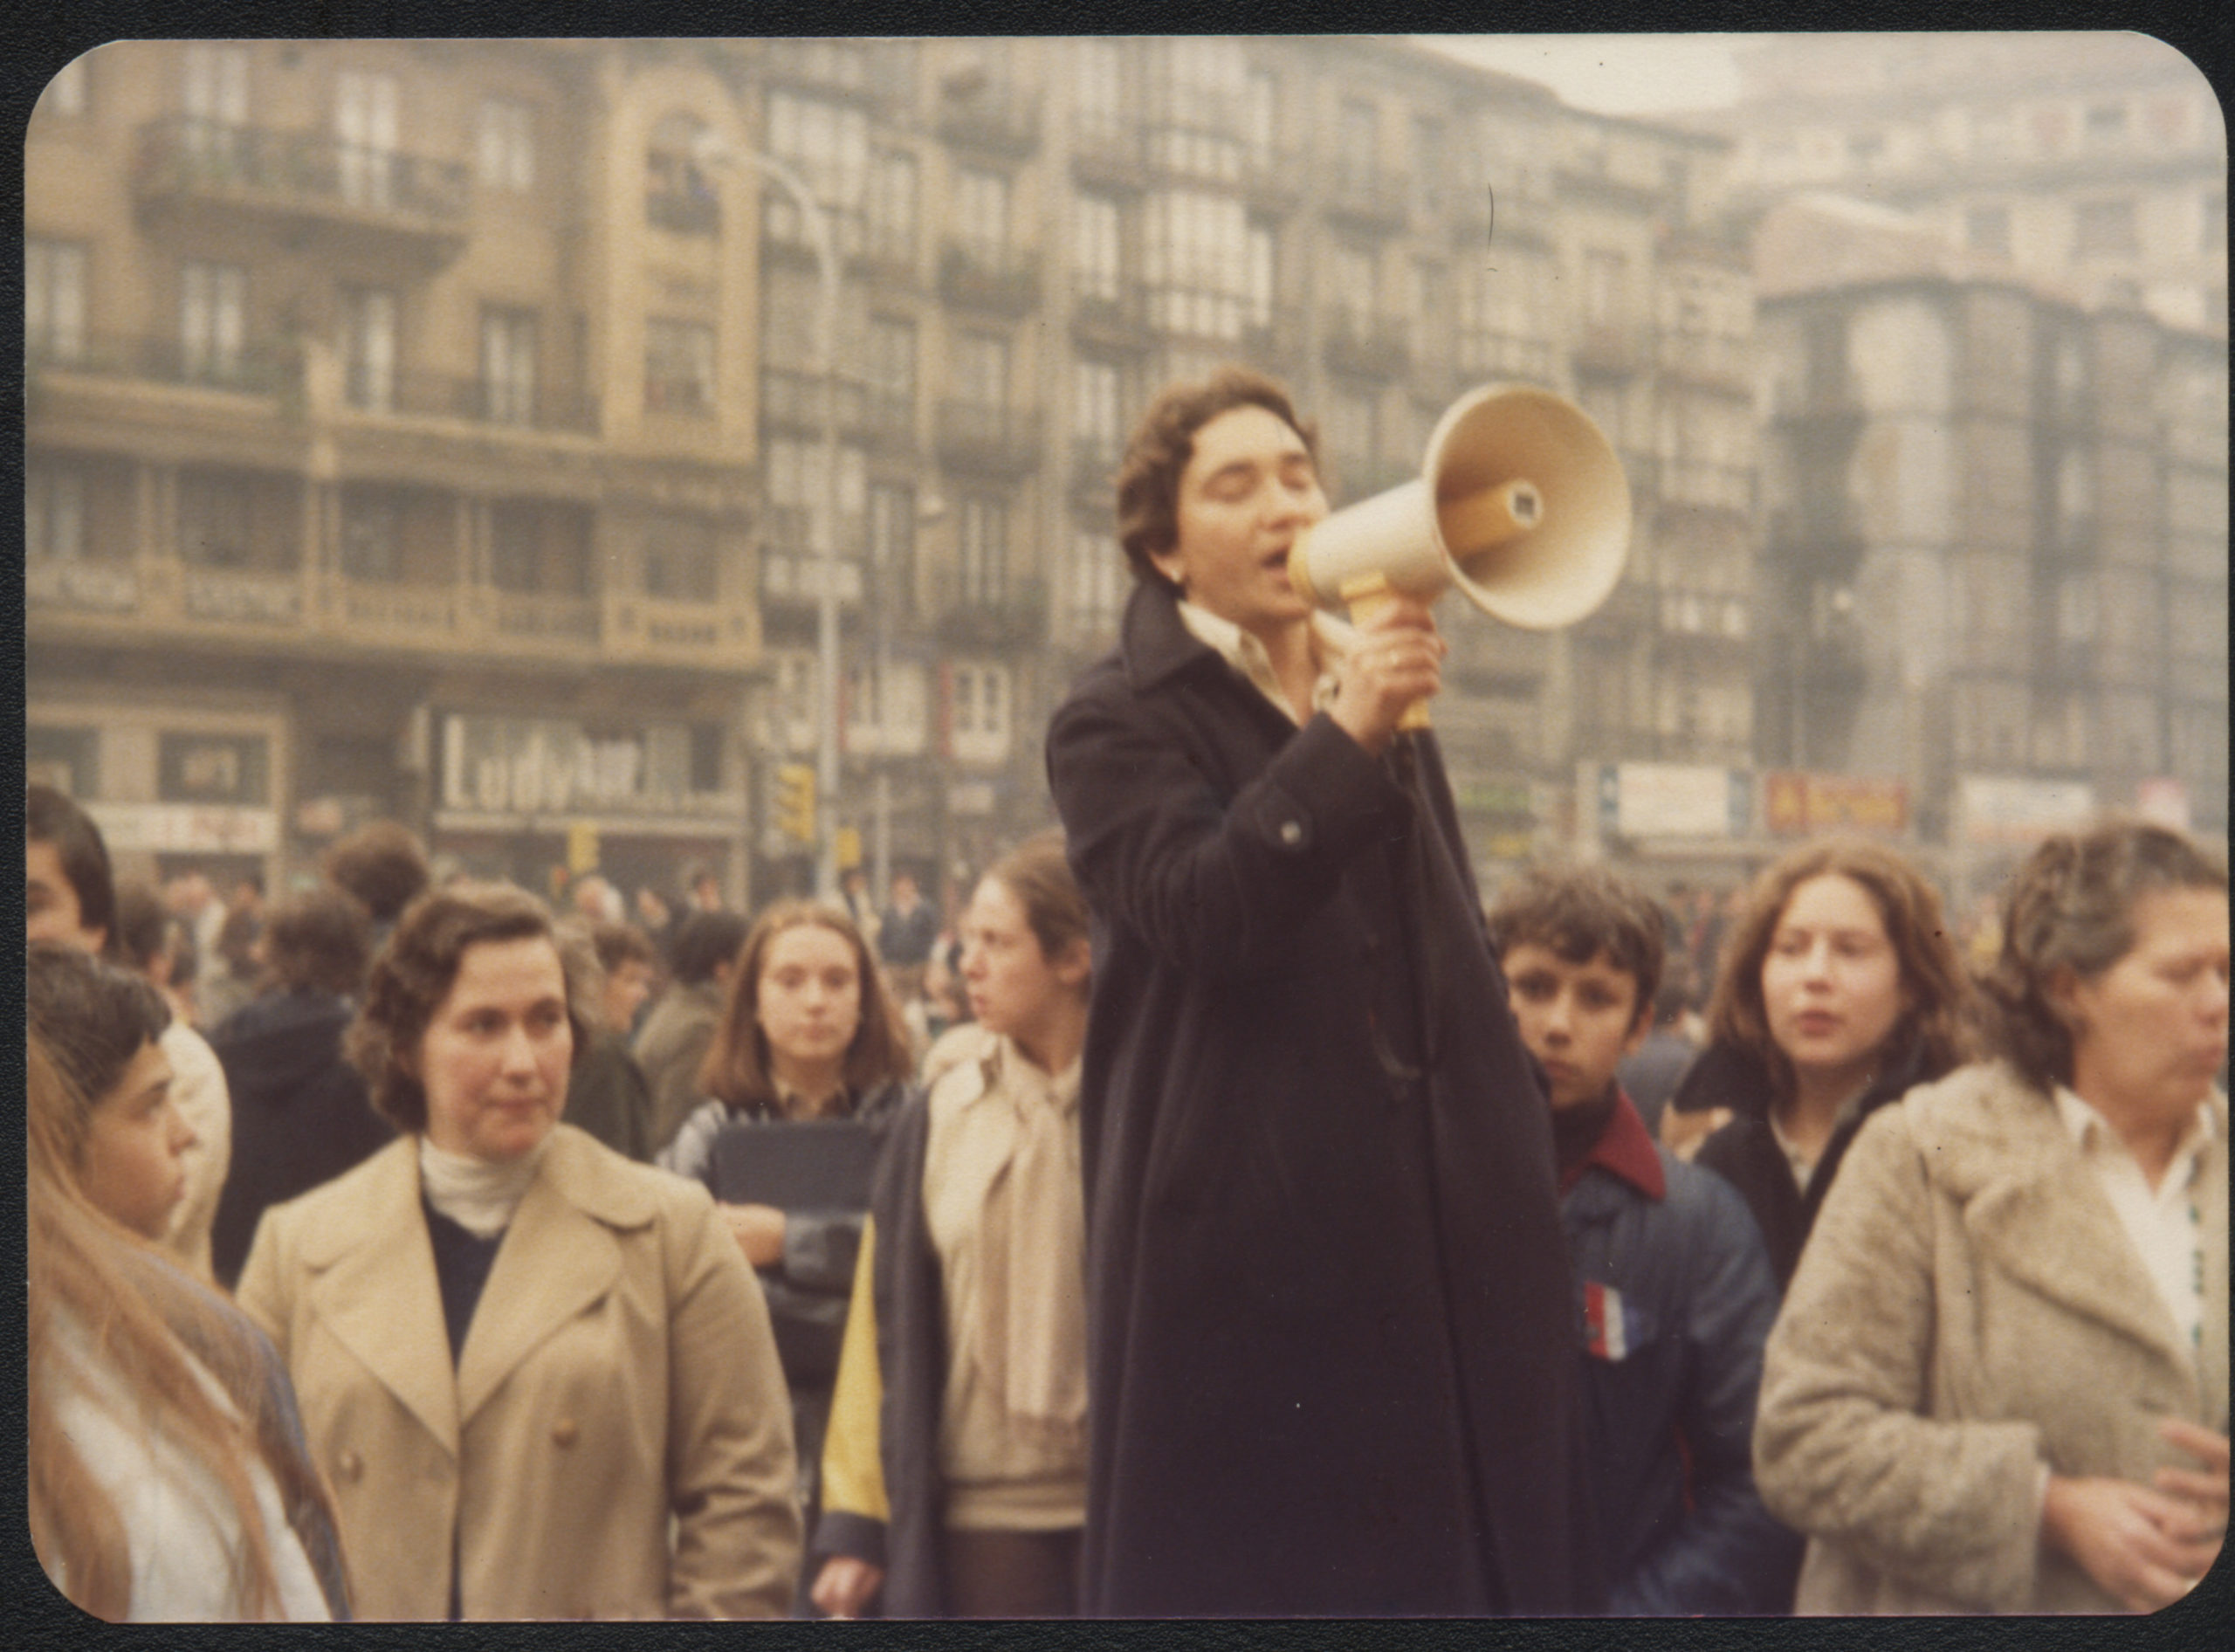 Marta Peredo y Pilar Gómez en una manifestación de estudiantes de Instituto en 1978. Desmemoriados/ Marta Peredo